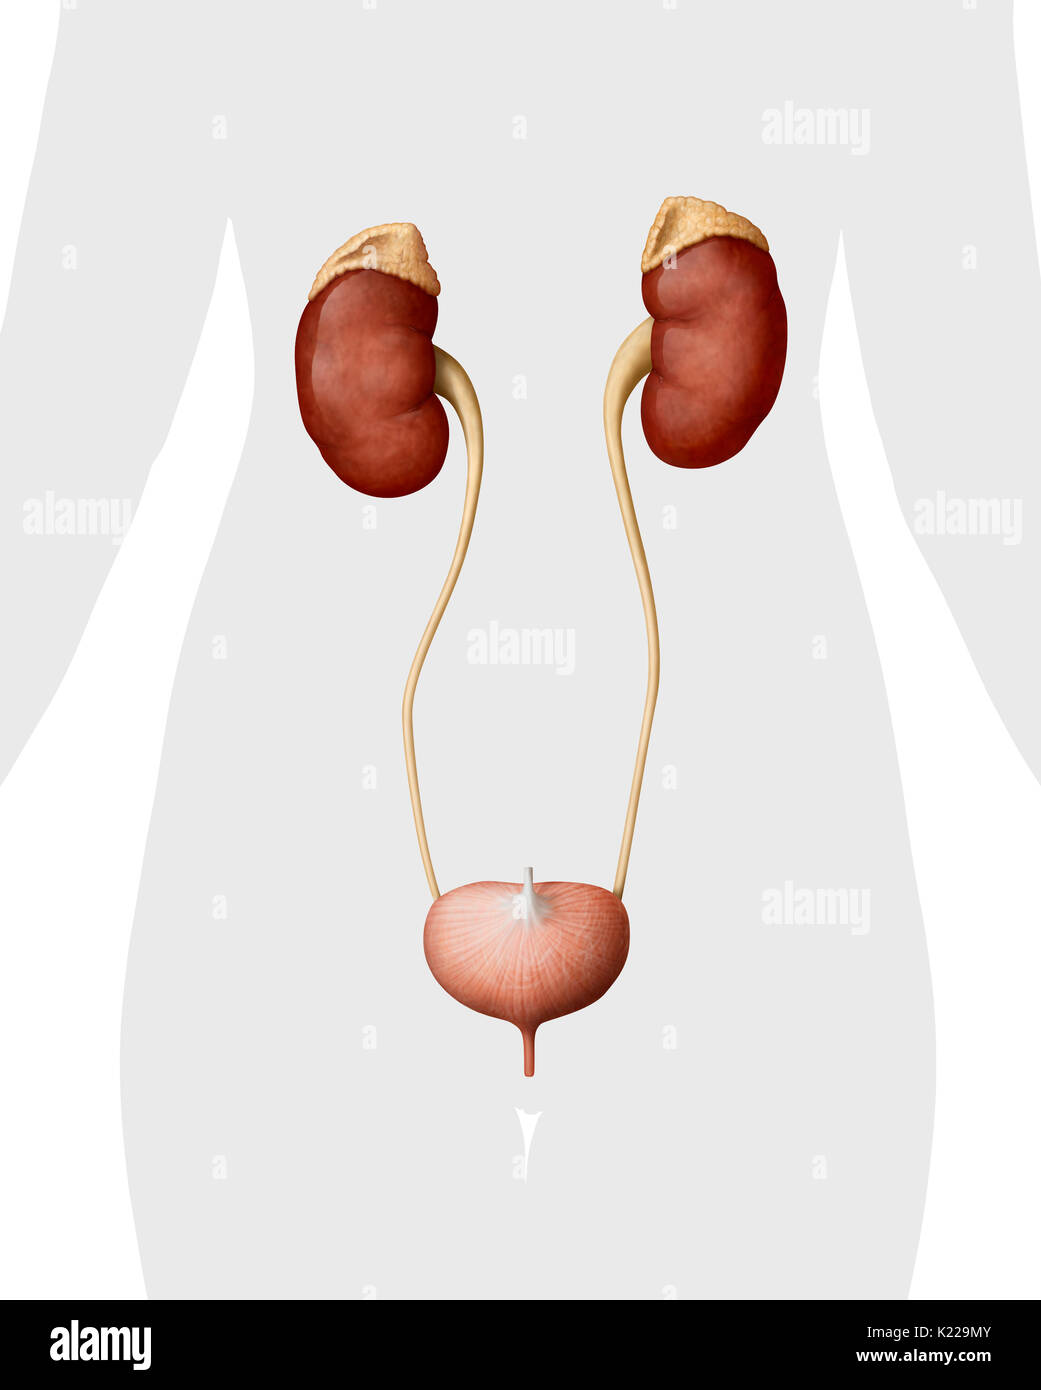 Dieses Bild zeigt die Harnwege von einer Frau, die die Nebenniere beinhaltet, der Nieren, der Harnleiter, der Harnblase und der Harnröhre. Stockfoto